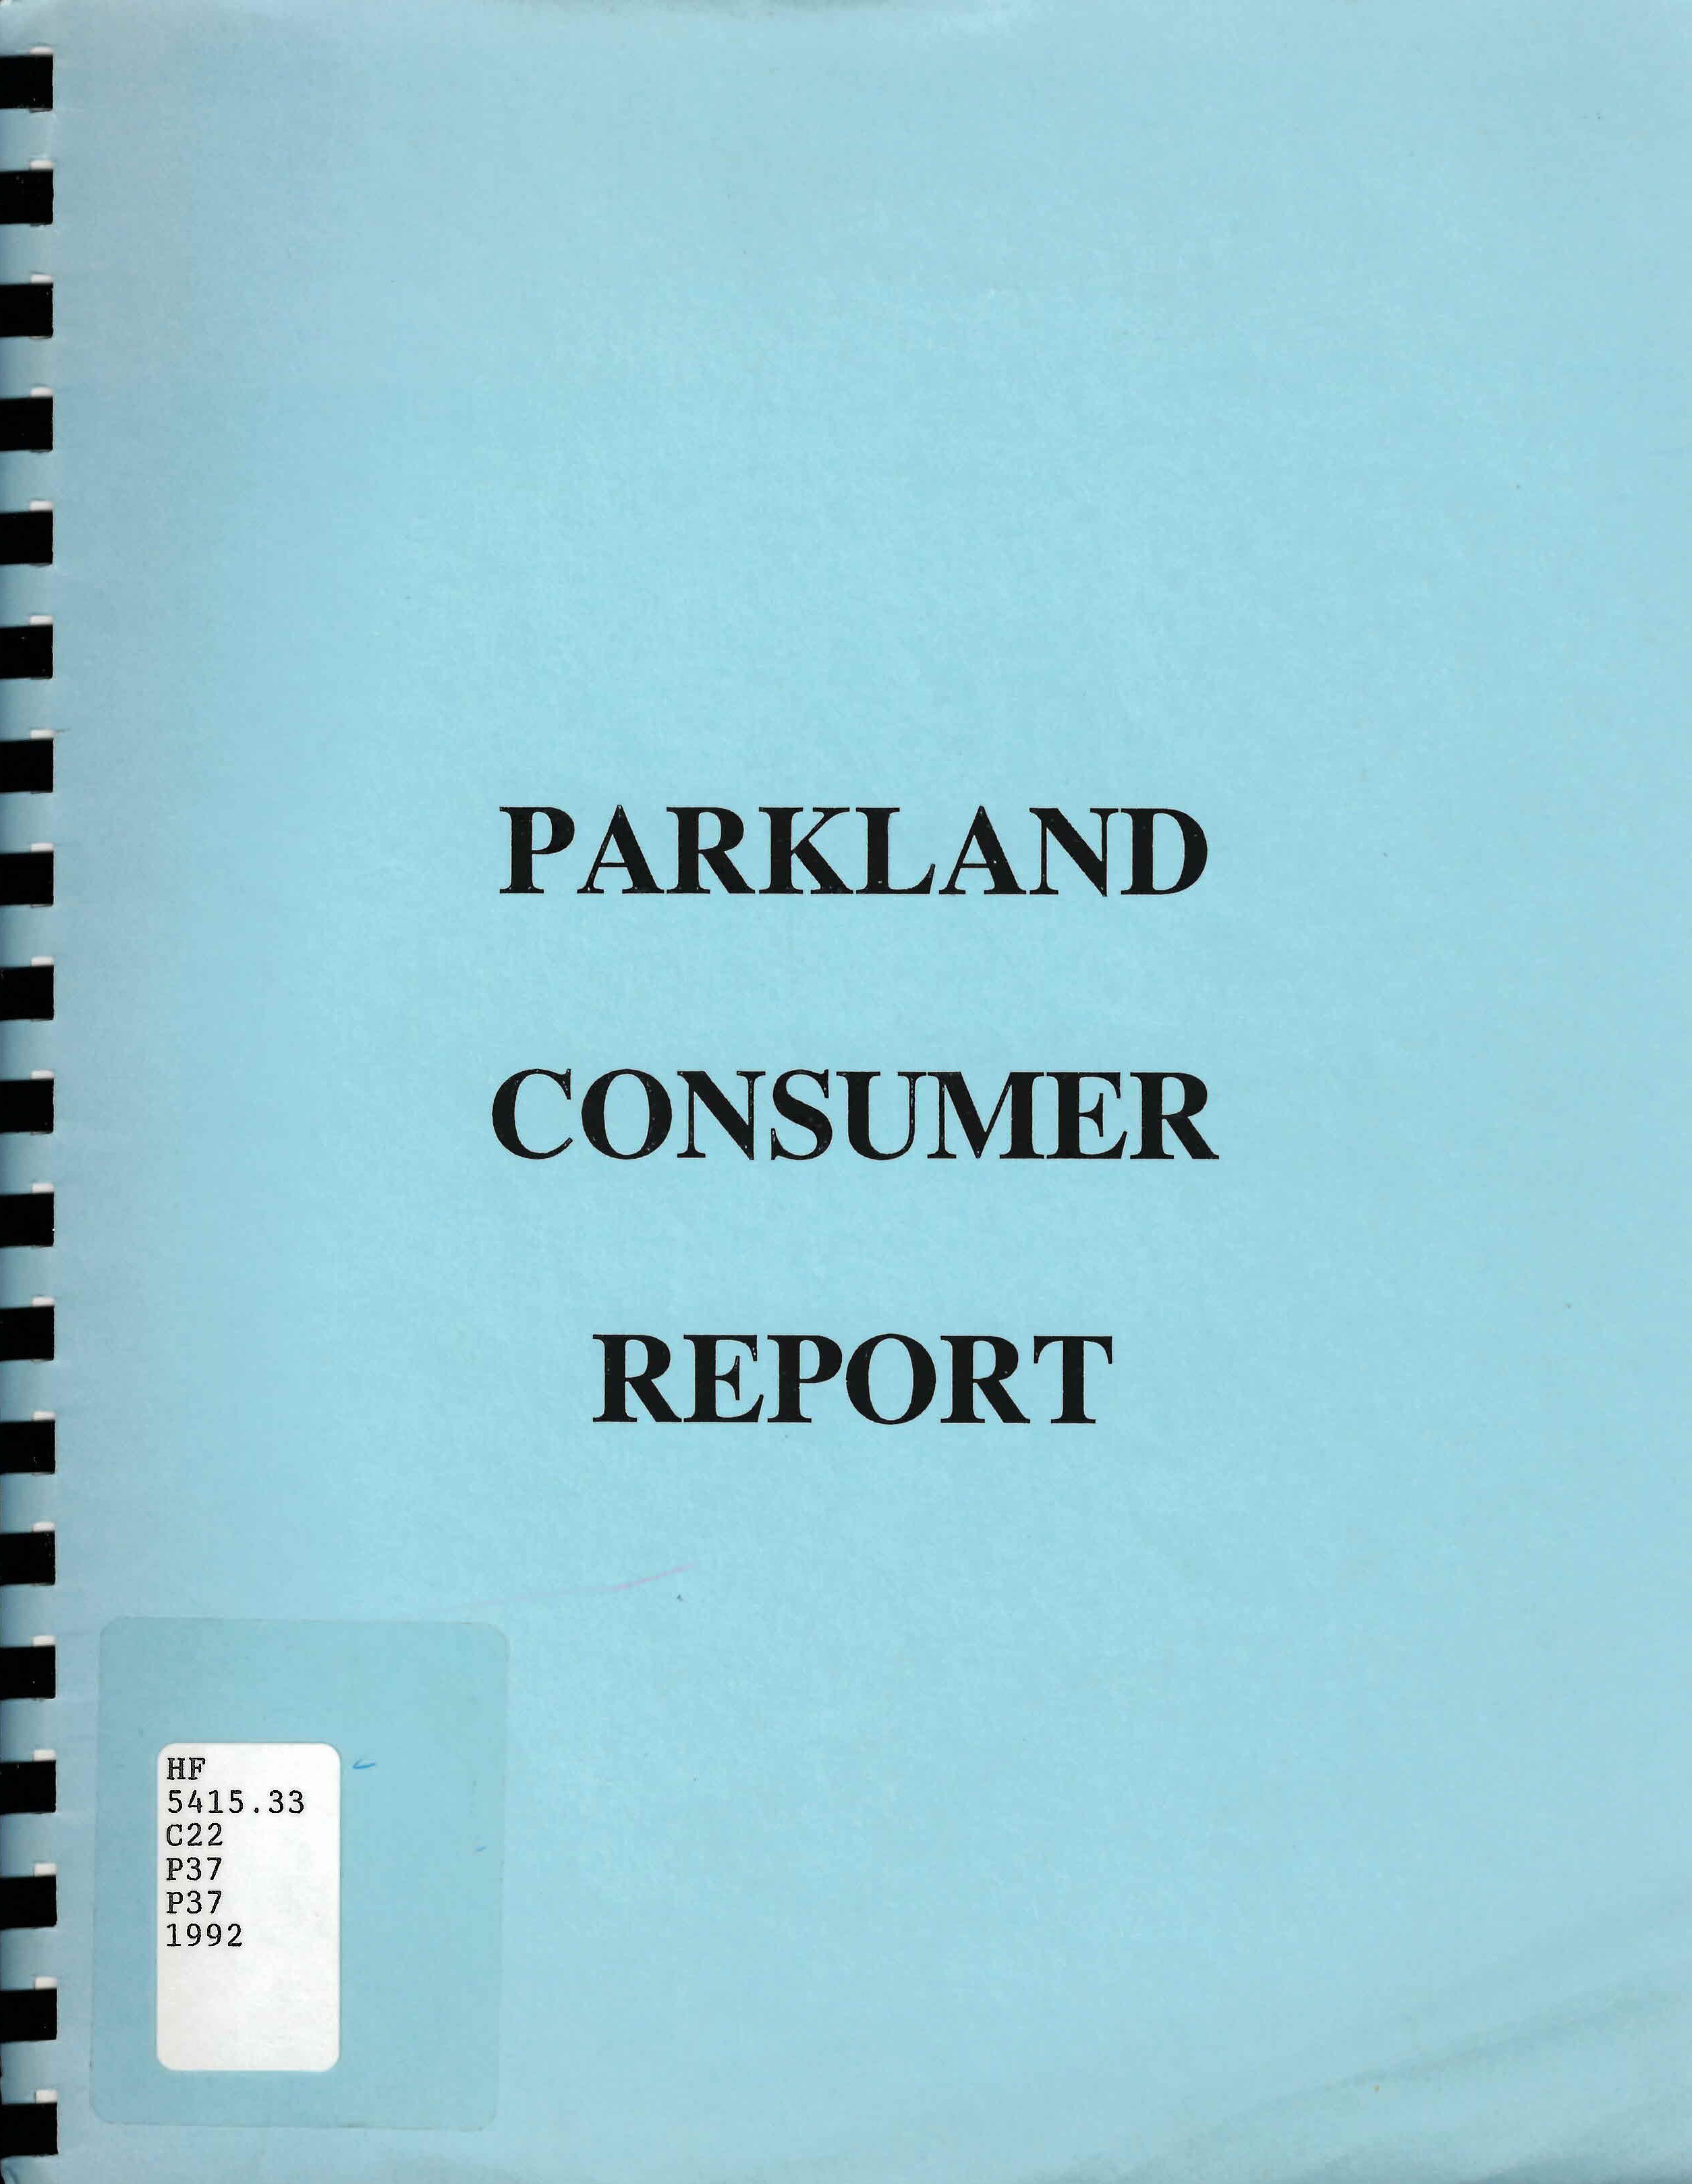 Parkland consumer report